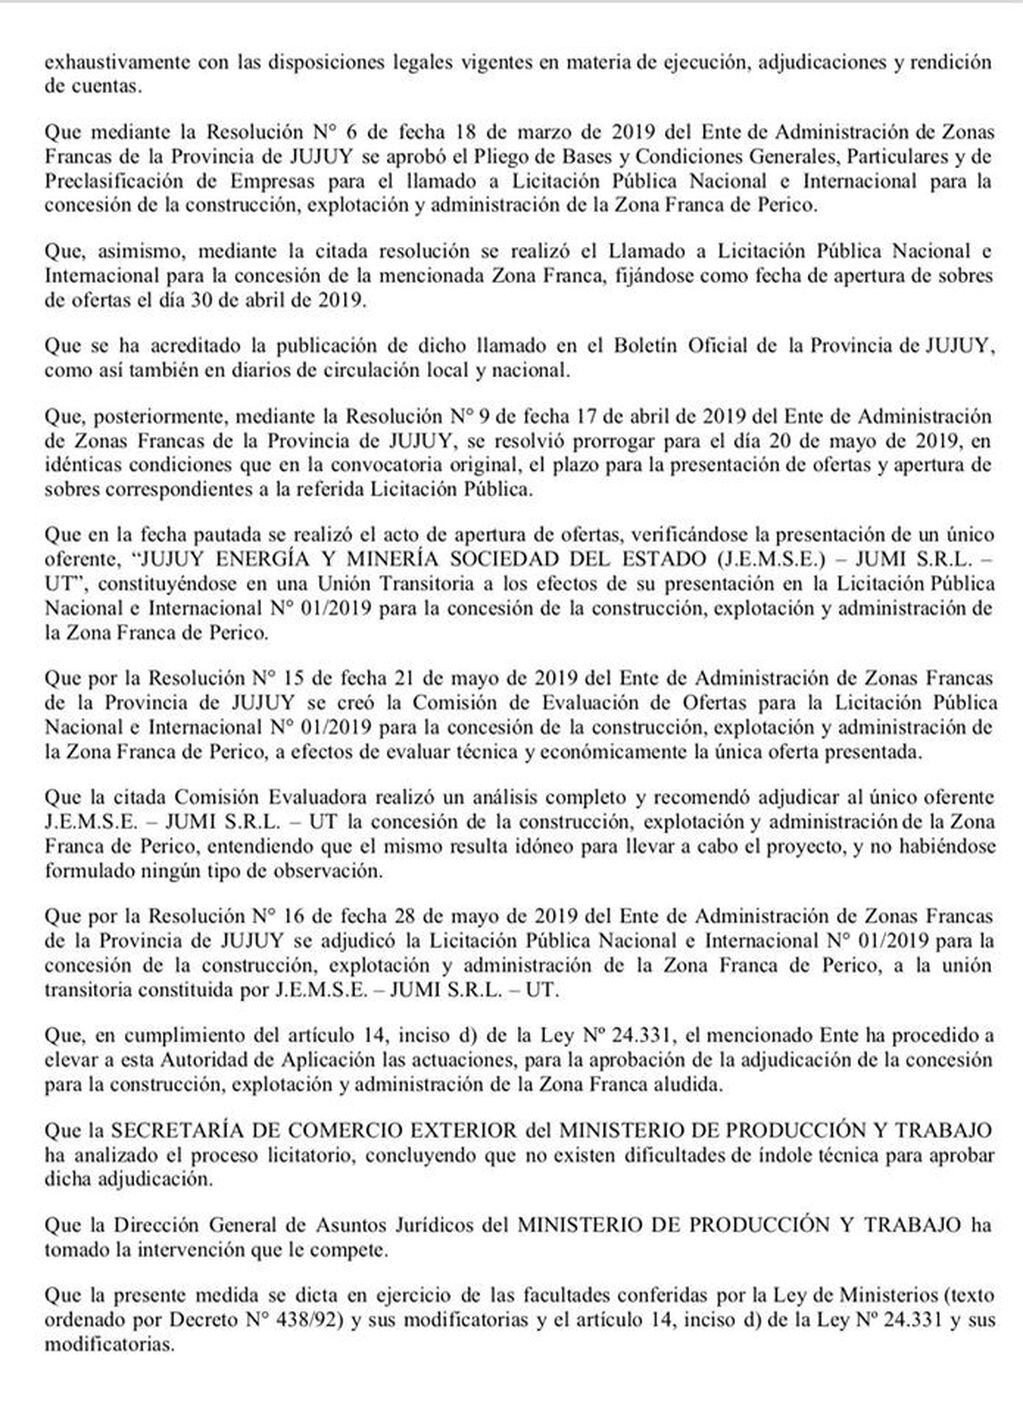 La resolución del Ministerio de Producción y Trabajo de la Nación, referida a la Zona Franca de Perico.